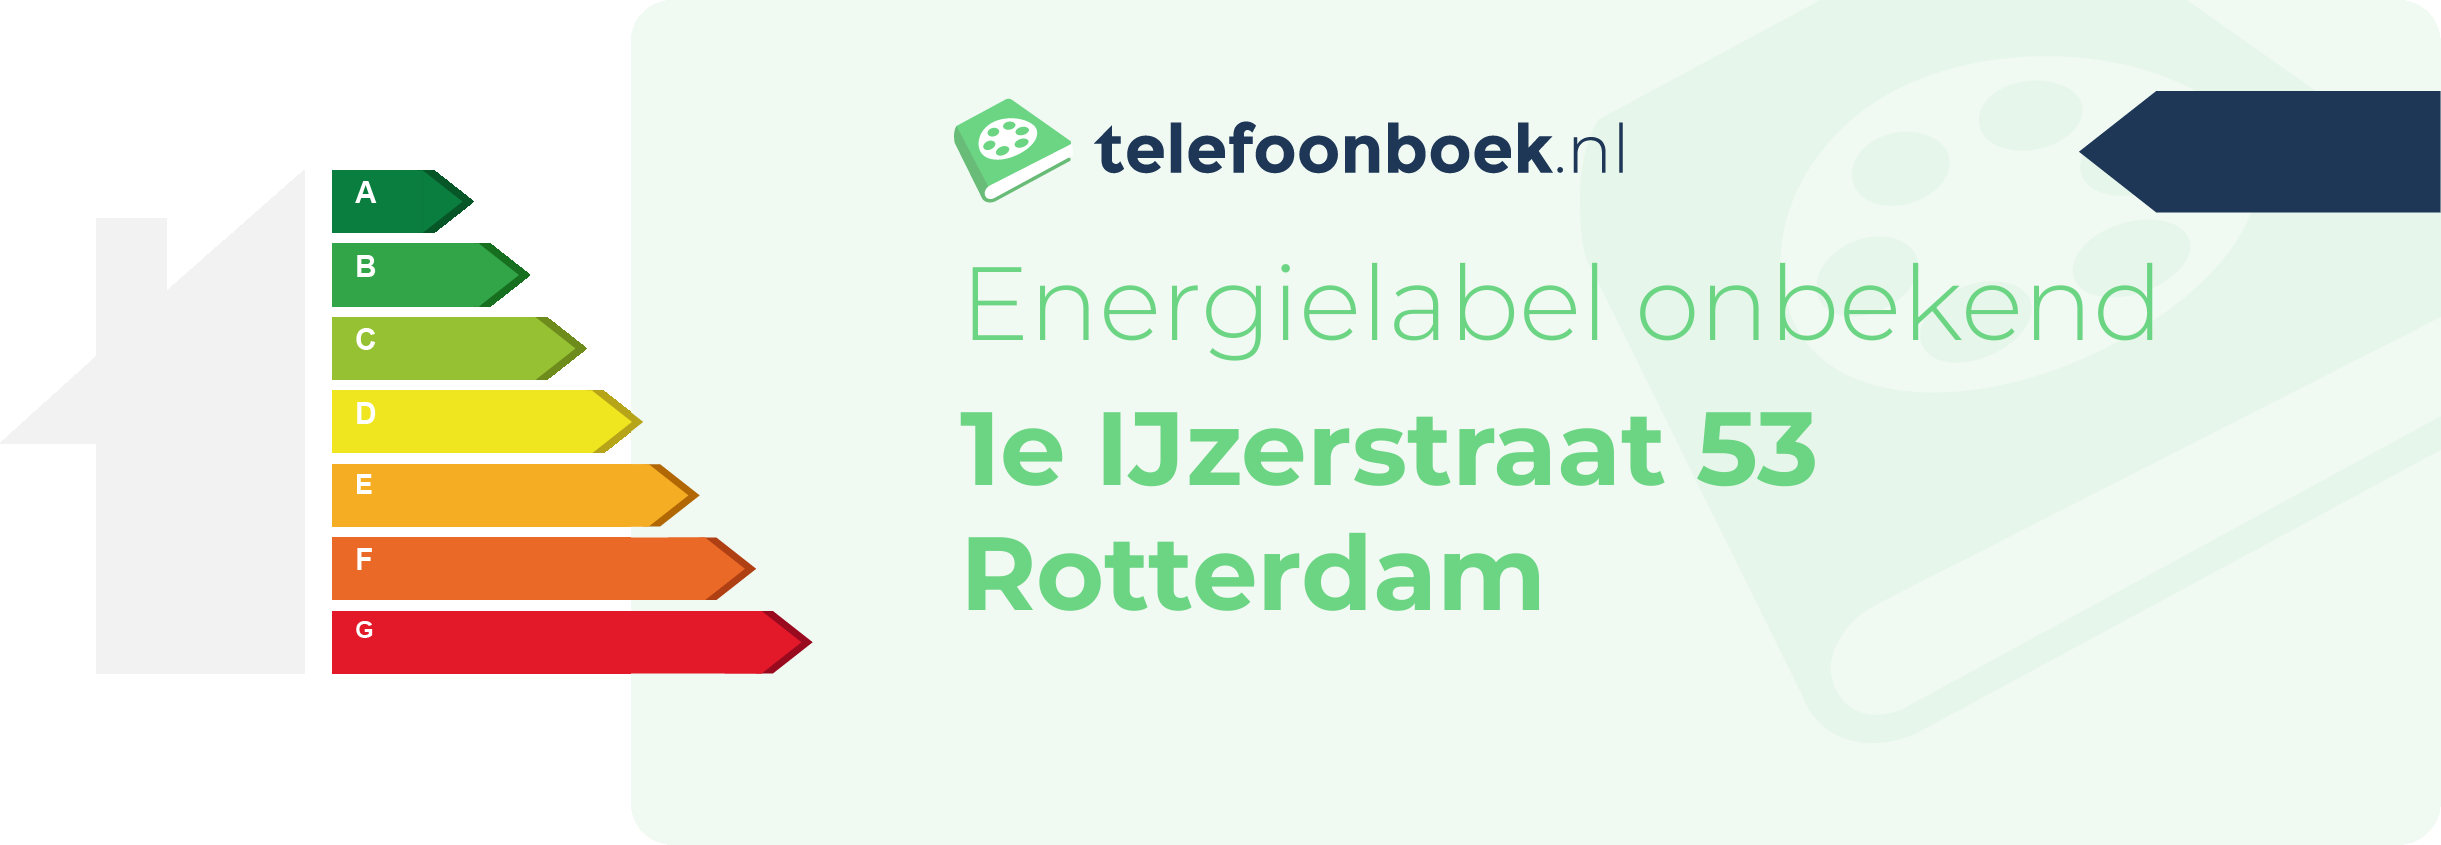 Energielabel 1e IJzerstraat 53 Rotterdam